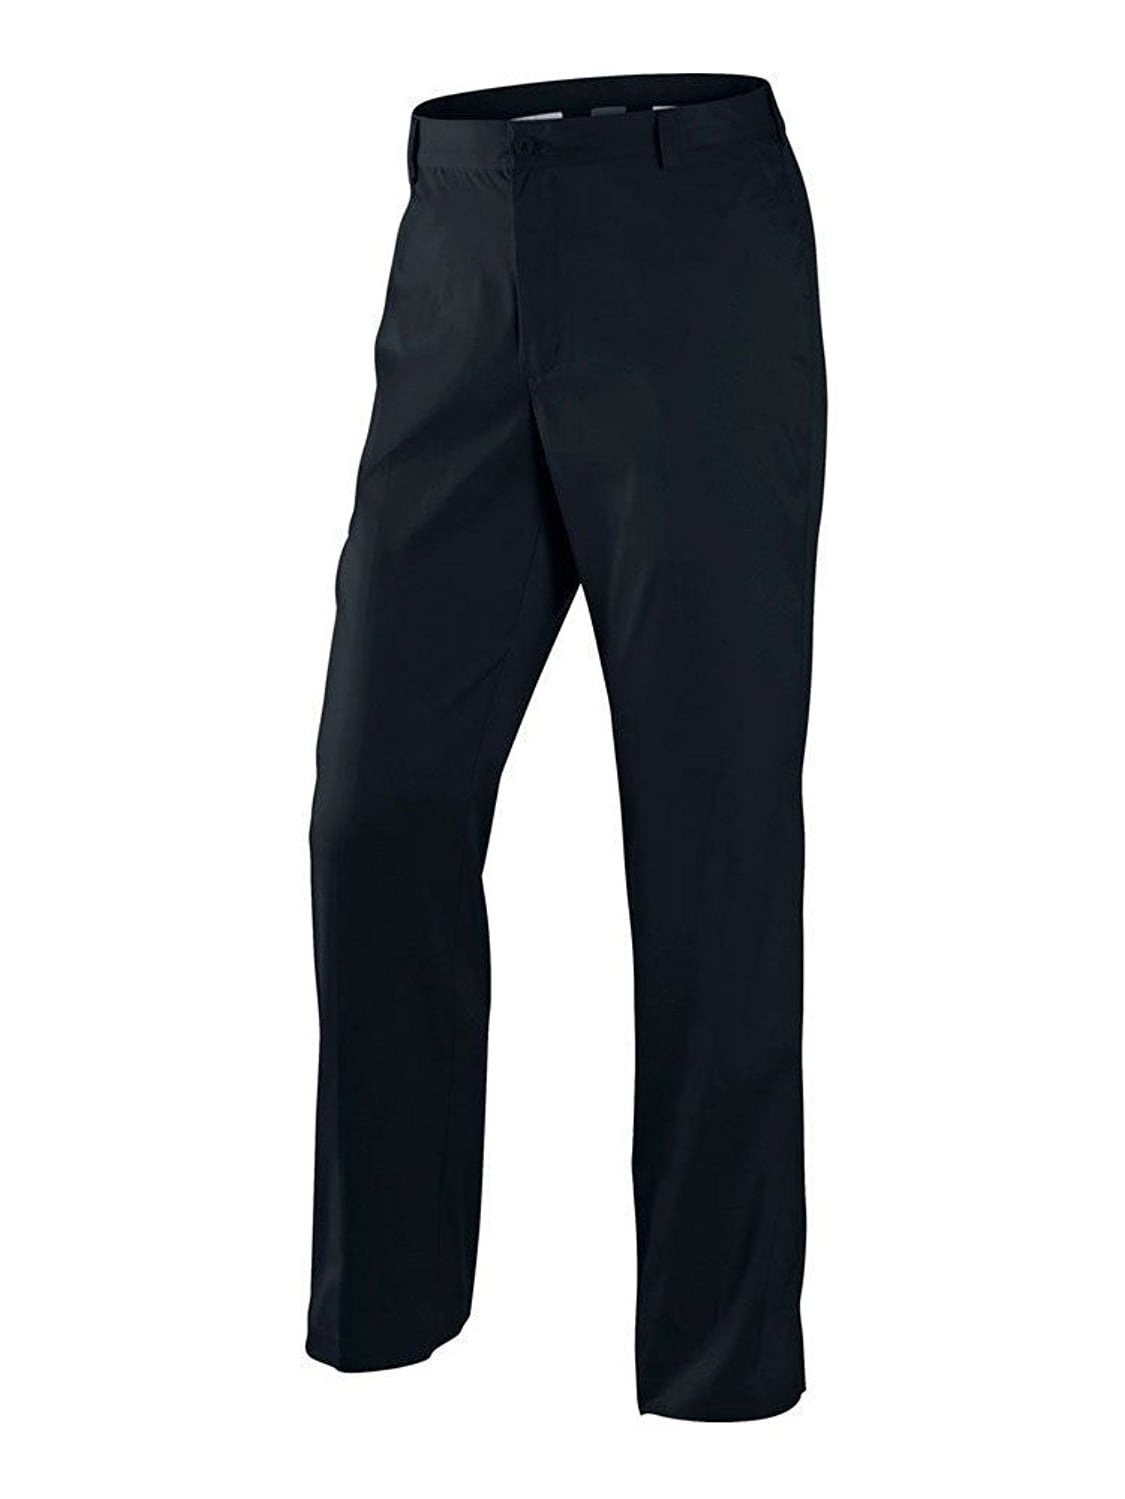 Men's Front Golf Pants-Black - Walmart.com